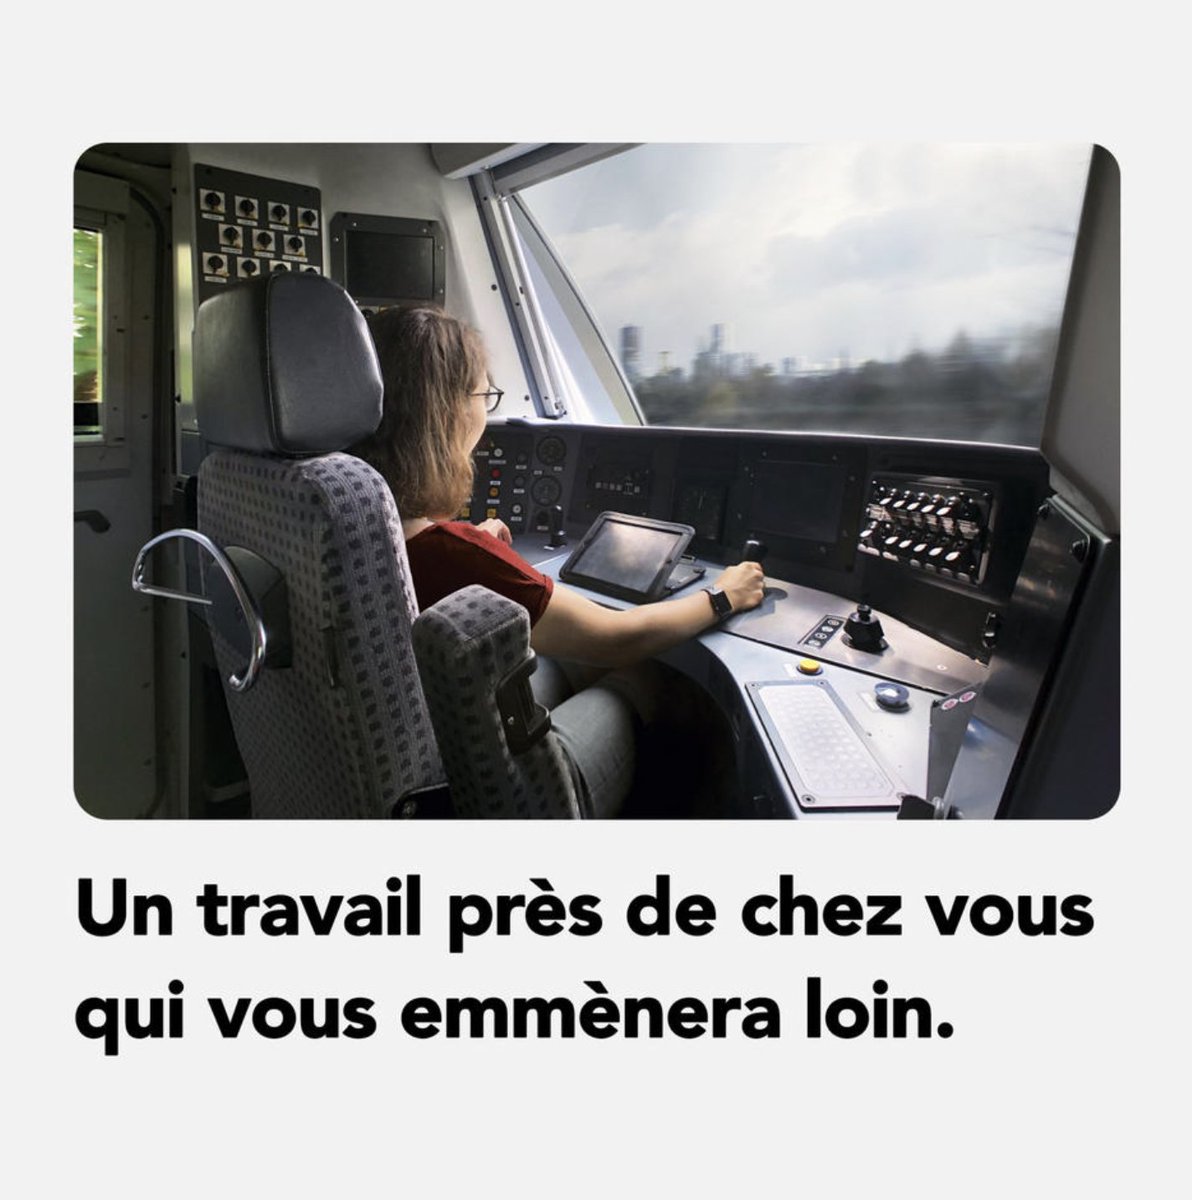 📢 #TransilienSNCFVoyageurs recrute des conductrices et conducteurs de train pour le prolongement du RER E. ✅Envoyez votre CV ! Postulez directement ici : tinyurl.com/msdb56e7 #Job #Emploi #OffreEmploi #RERE @RER_E